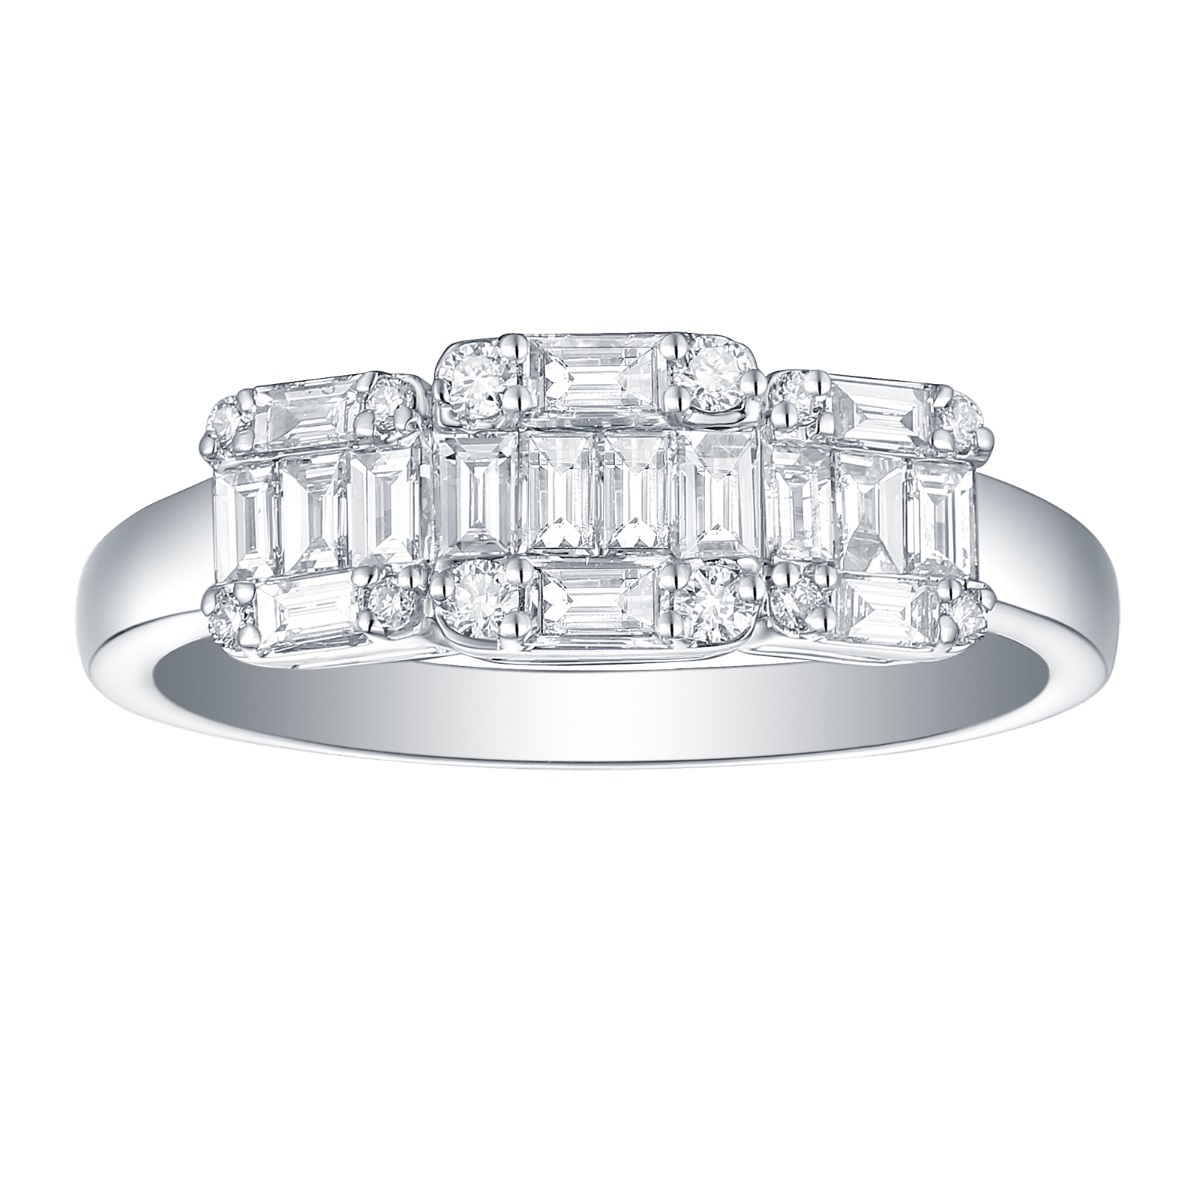 R34824WHT – 18K White Gold Diamond Ring, 0.6 TCW